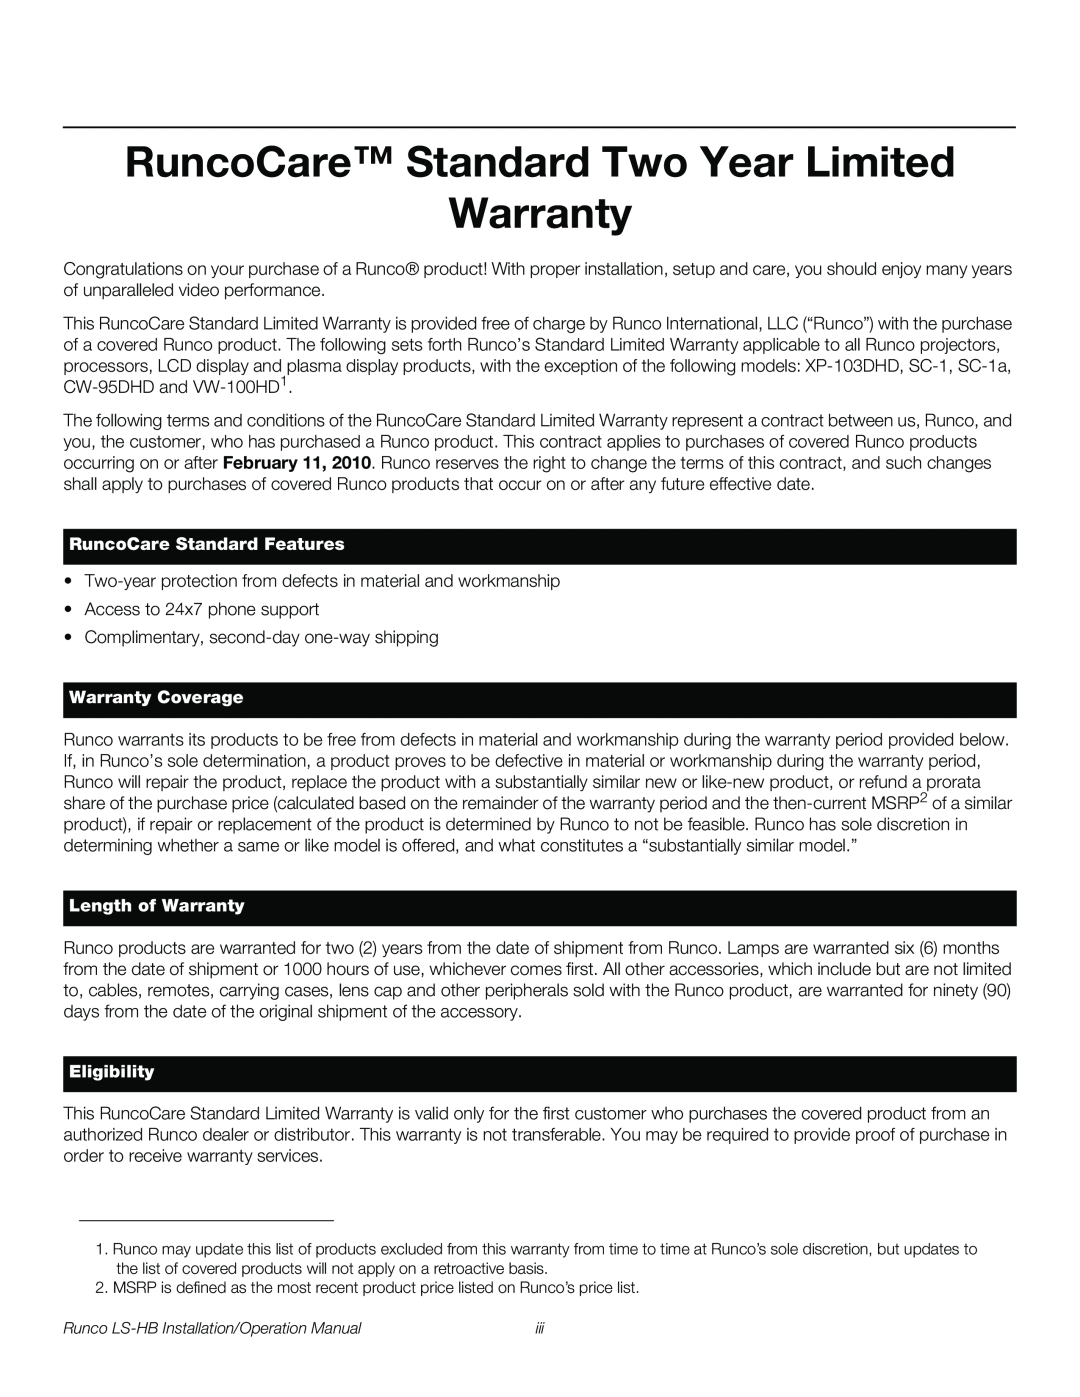 Runco LS-HB RuncoCare Standard Two Year Limited Warranty, RuncoCare Standard Features, Warranty Coverage, Eligibility 